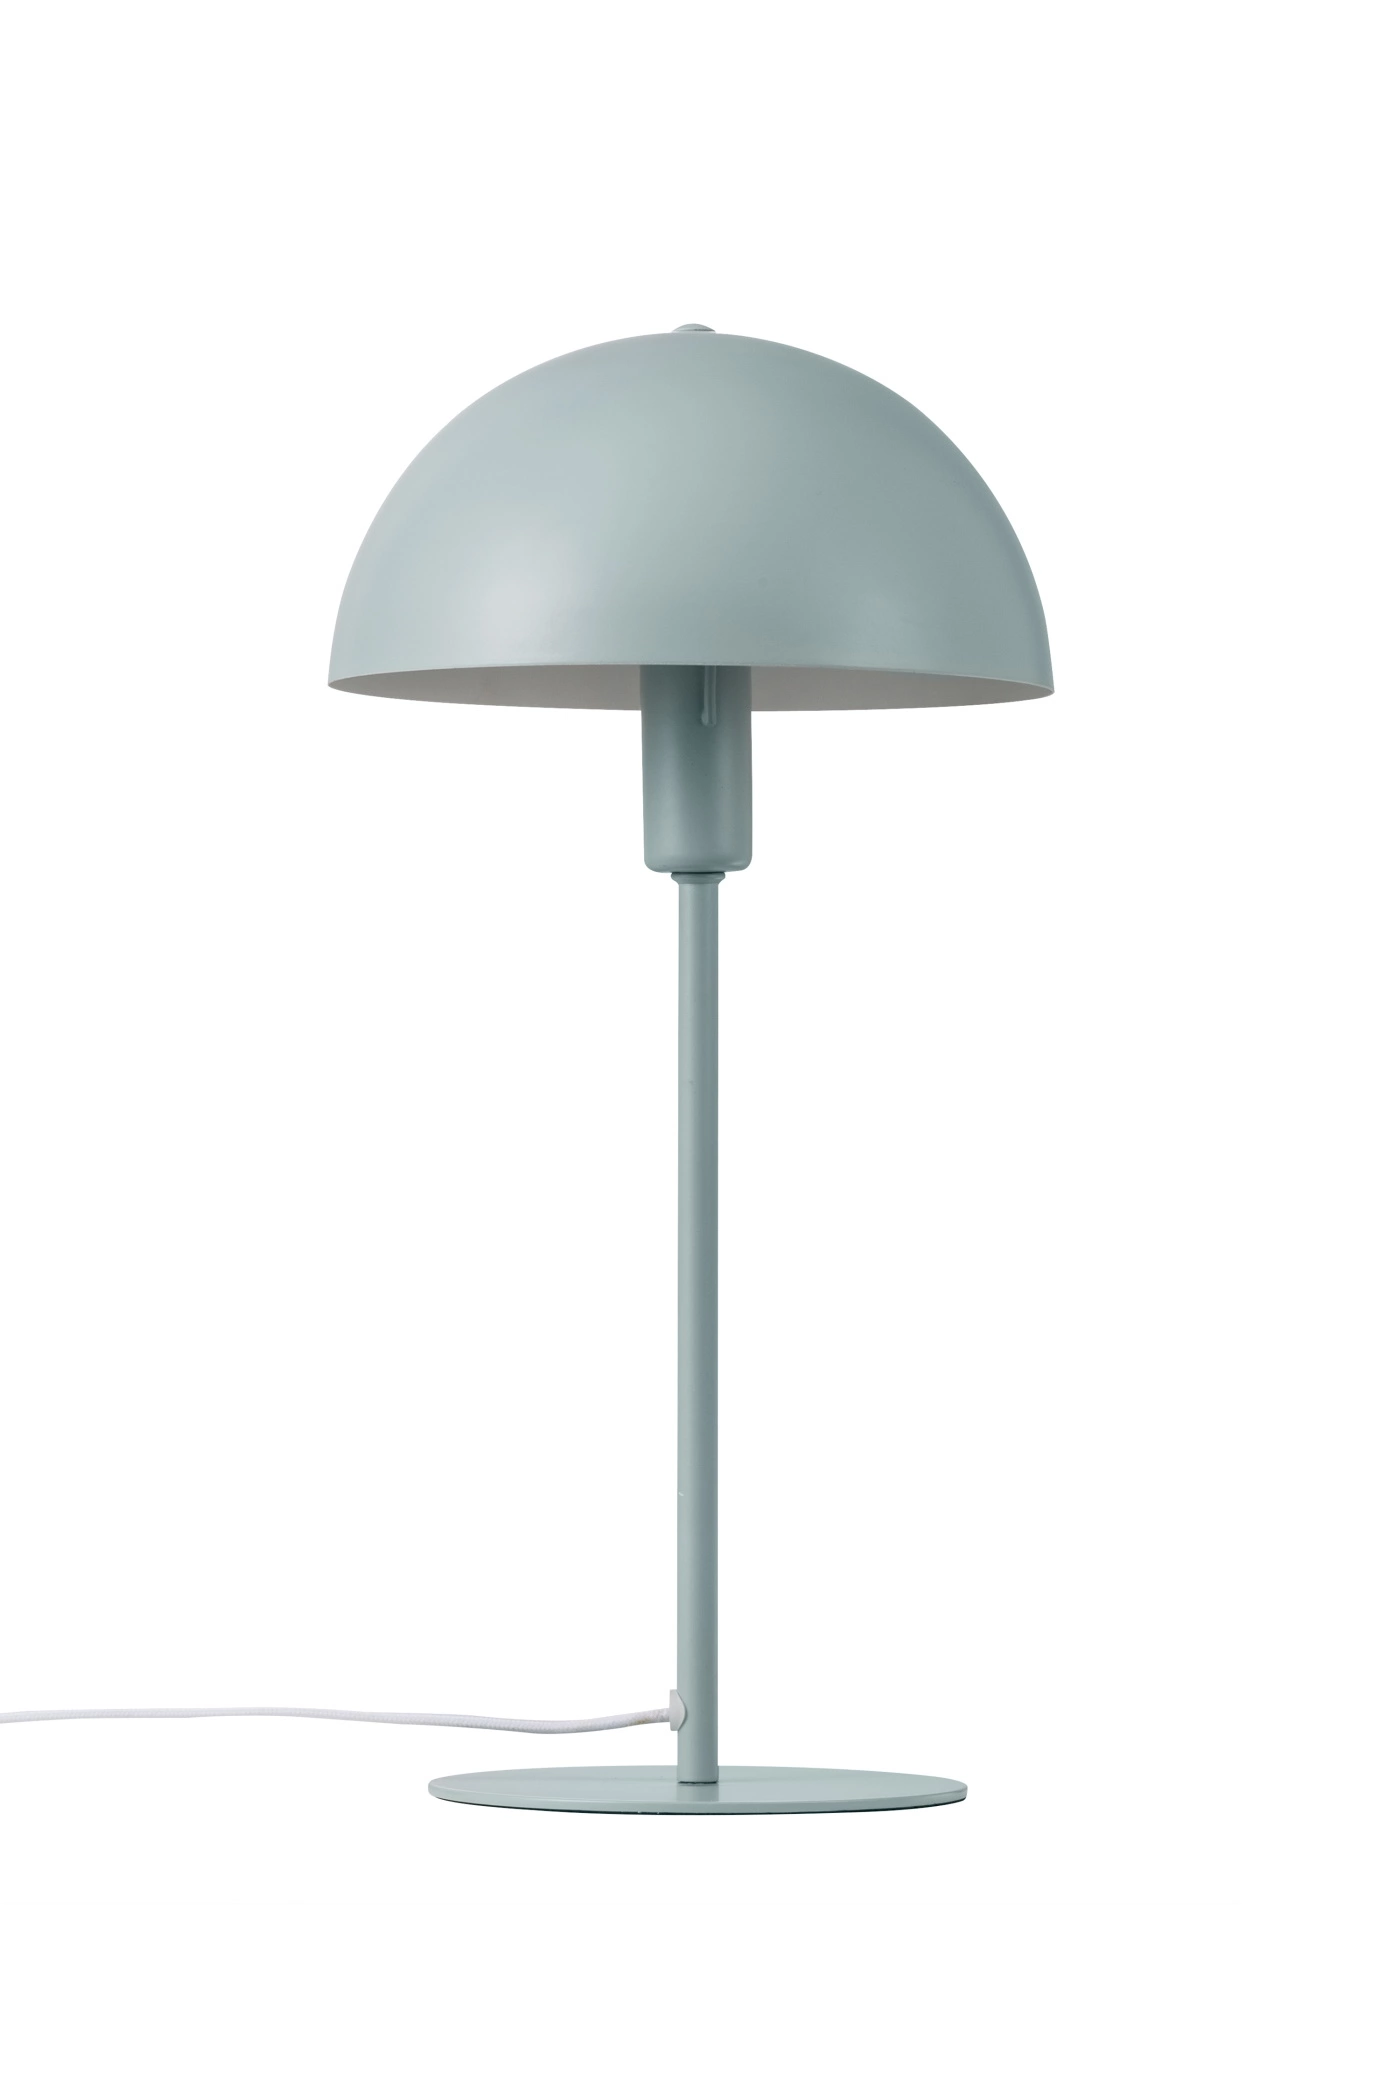   
                        Настільна лампа NORDLUX (Данія) 51205    
                         у стилі скандинавський, модерн.  
                        Тип джерела світла: cвітлодіодні led, енергозберігаючі, розжарювання.                                                 Кольори плафонів і підвісок: зелений.                         Матеріал: метал.                          фото 2